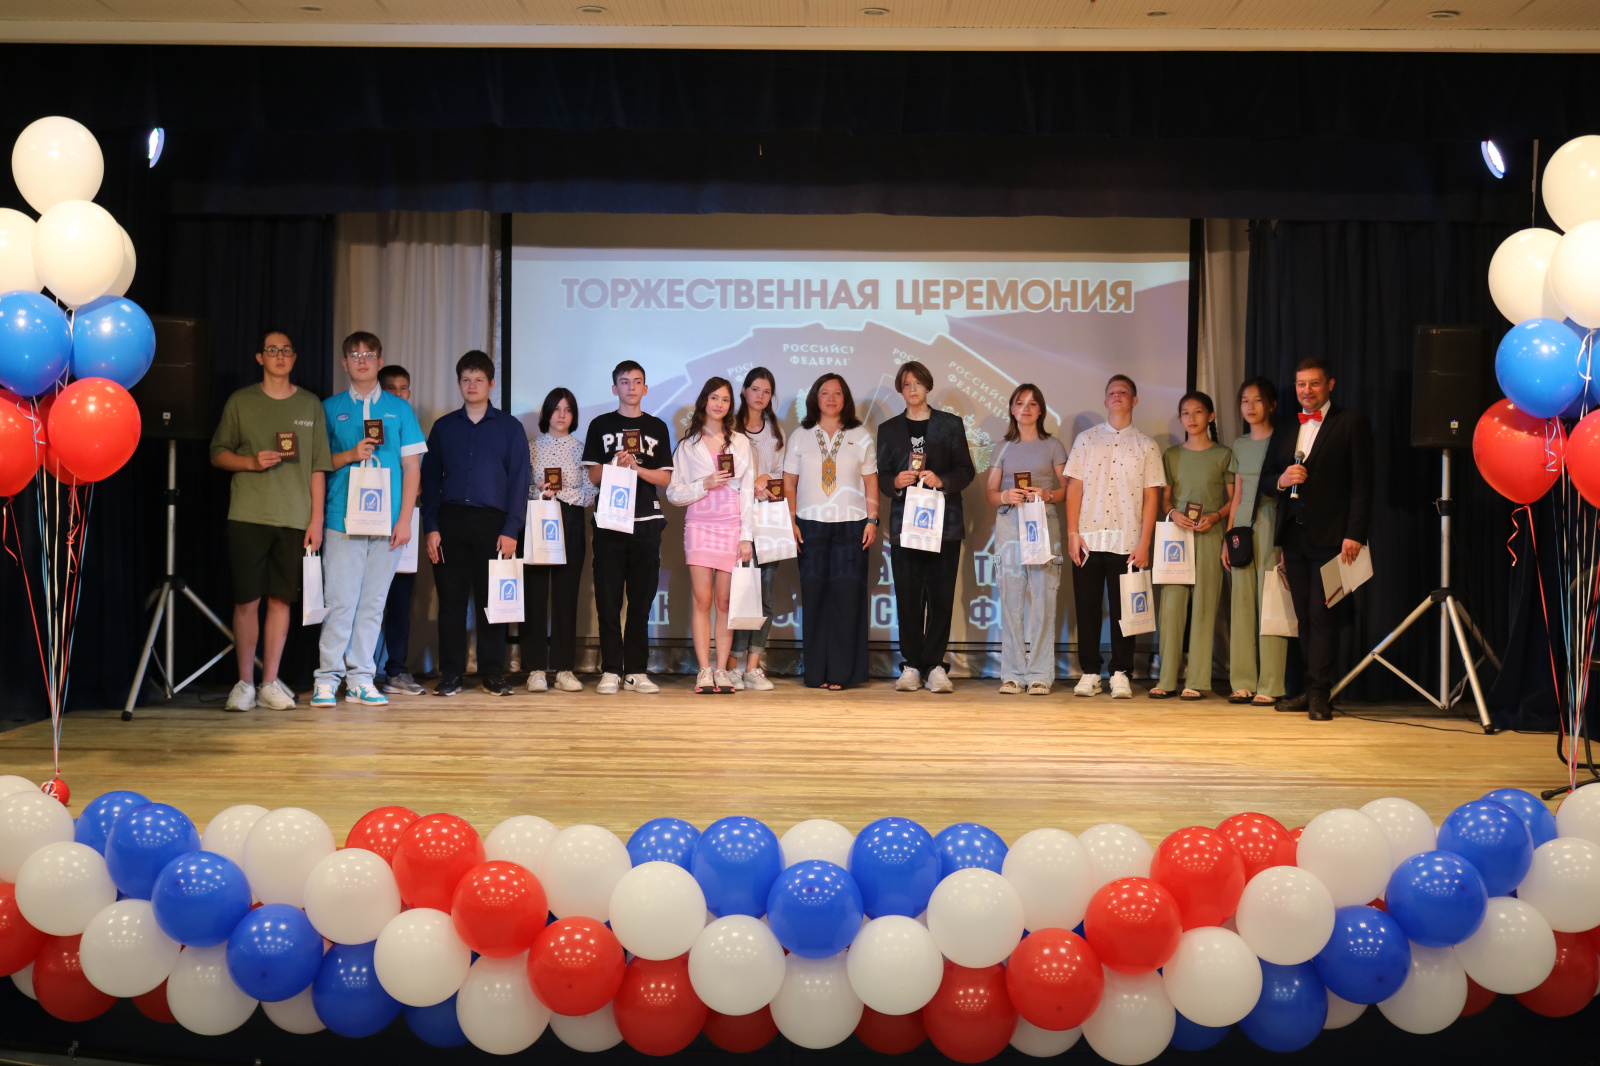 Сегодня в Доме культуры «Пересвет» прошло торжественное вручение паспортов Российской Федерации молодым жителям города